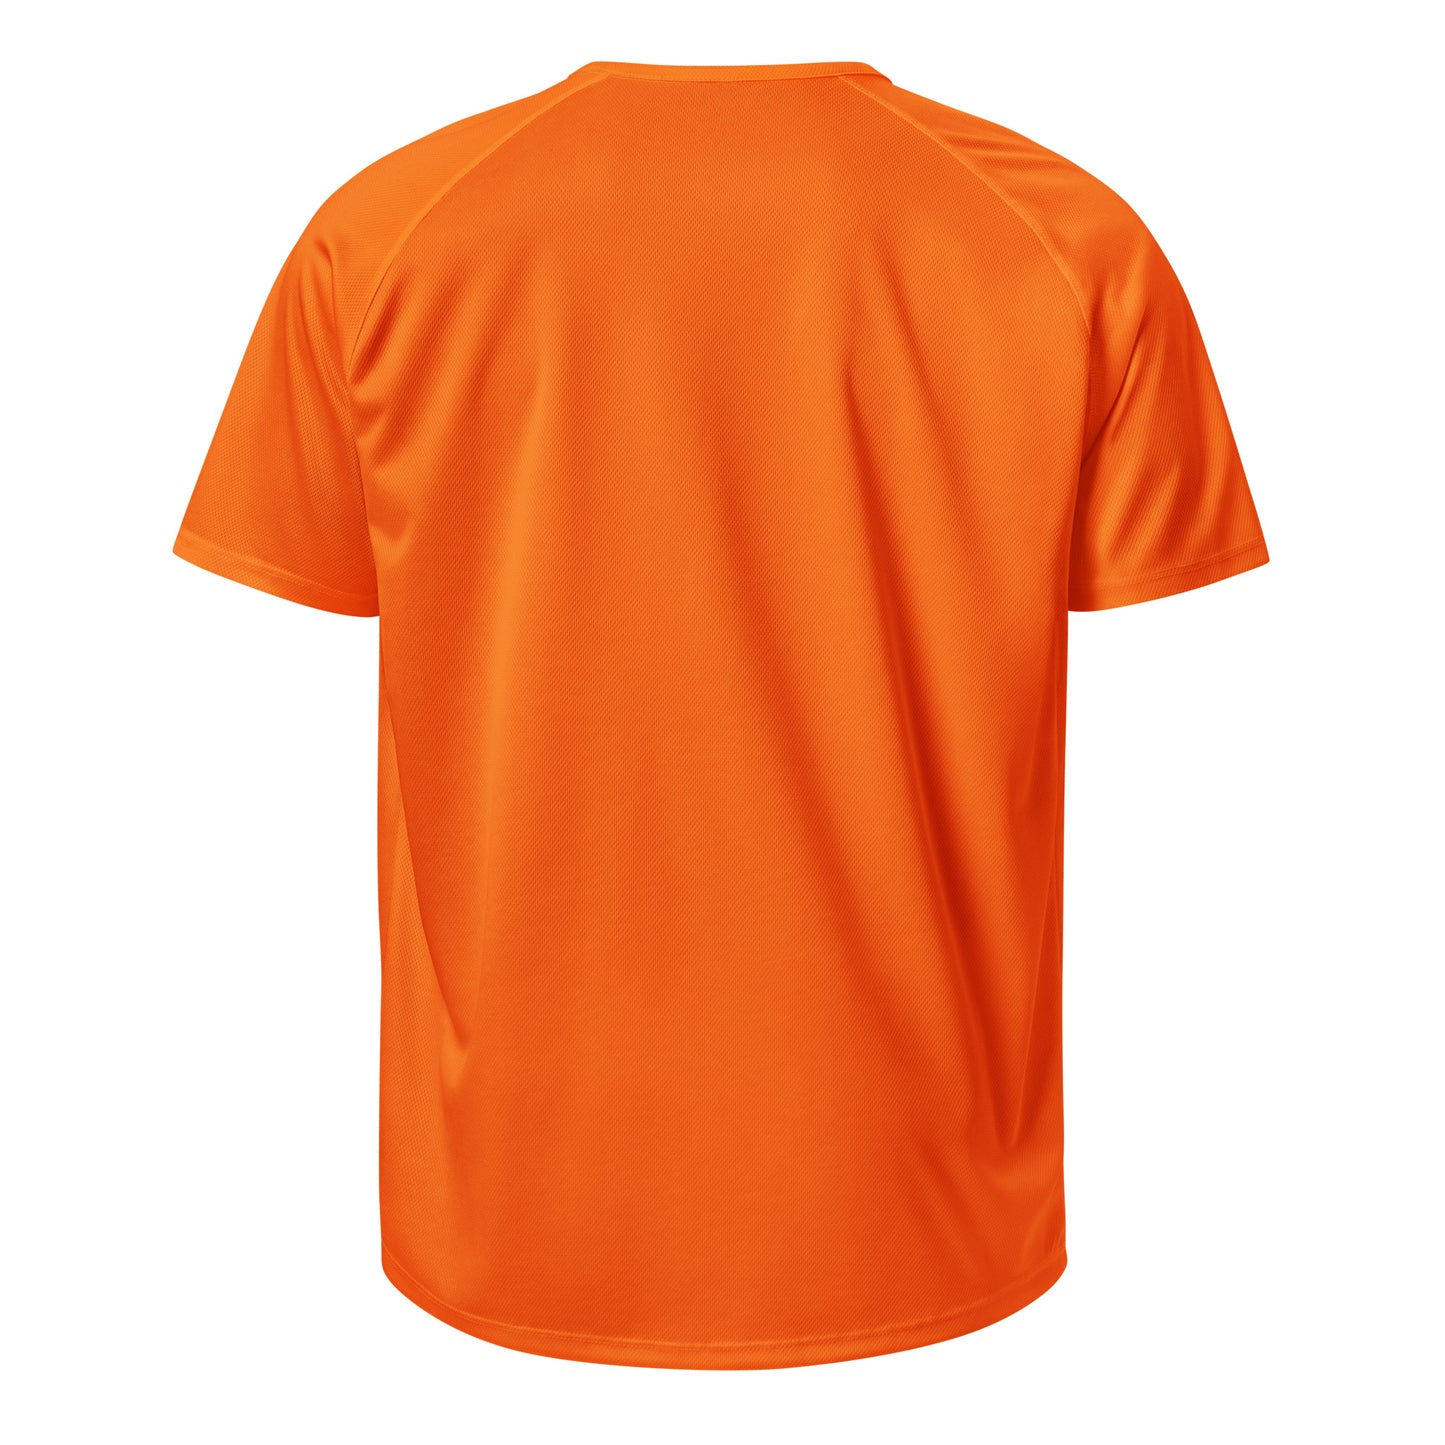 E132 - Sports/Breathable Fabric (MX win : Orange)